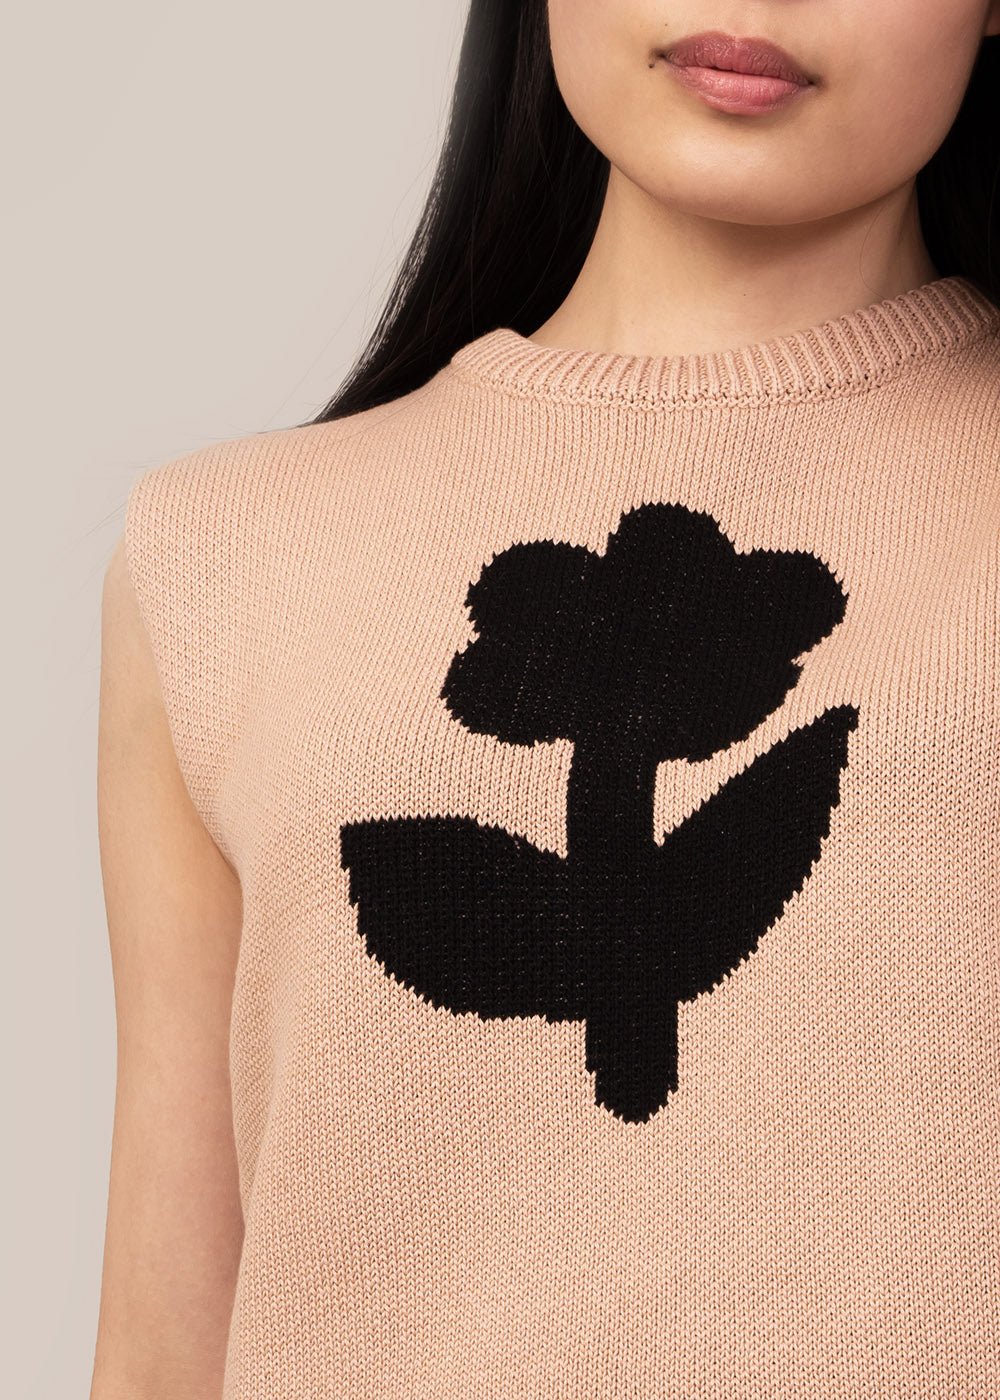 Mundaka Beige Flower Vest - New Classics Studios Sustainable Ethical Fashion Canada